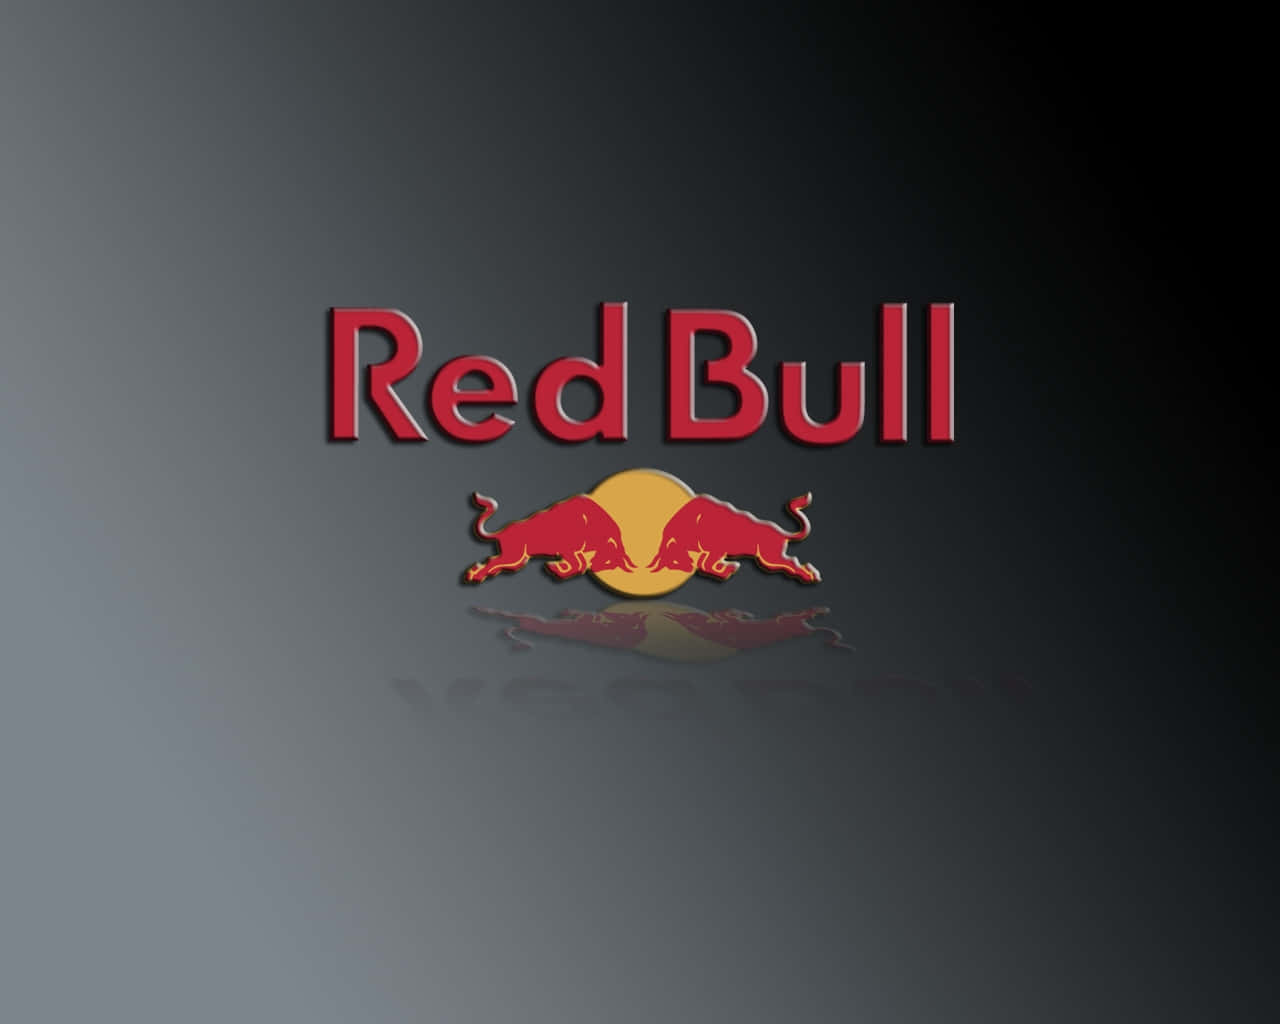 Fåvingerne Med Red Bull!